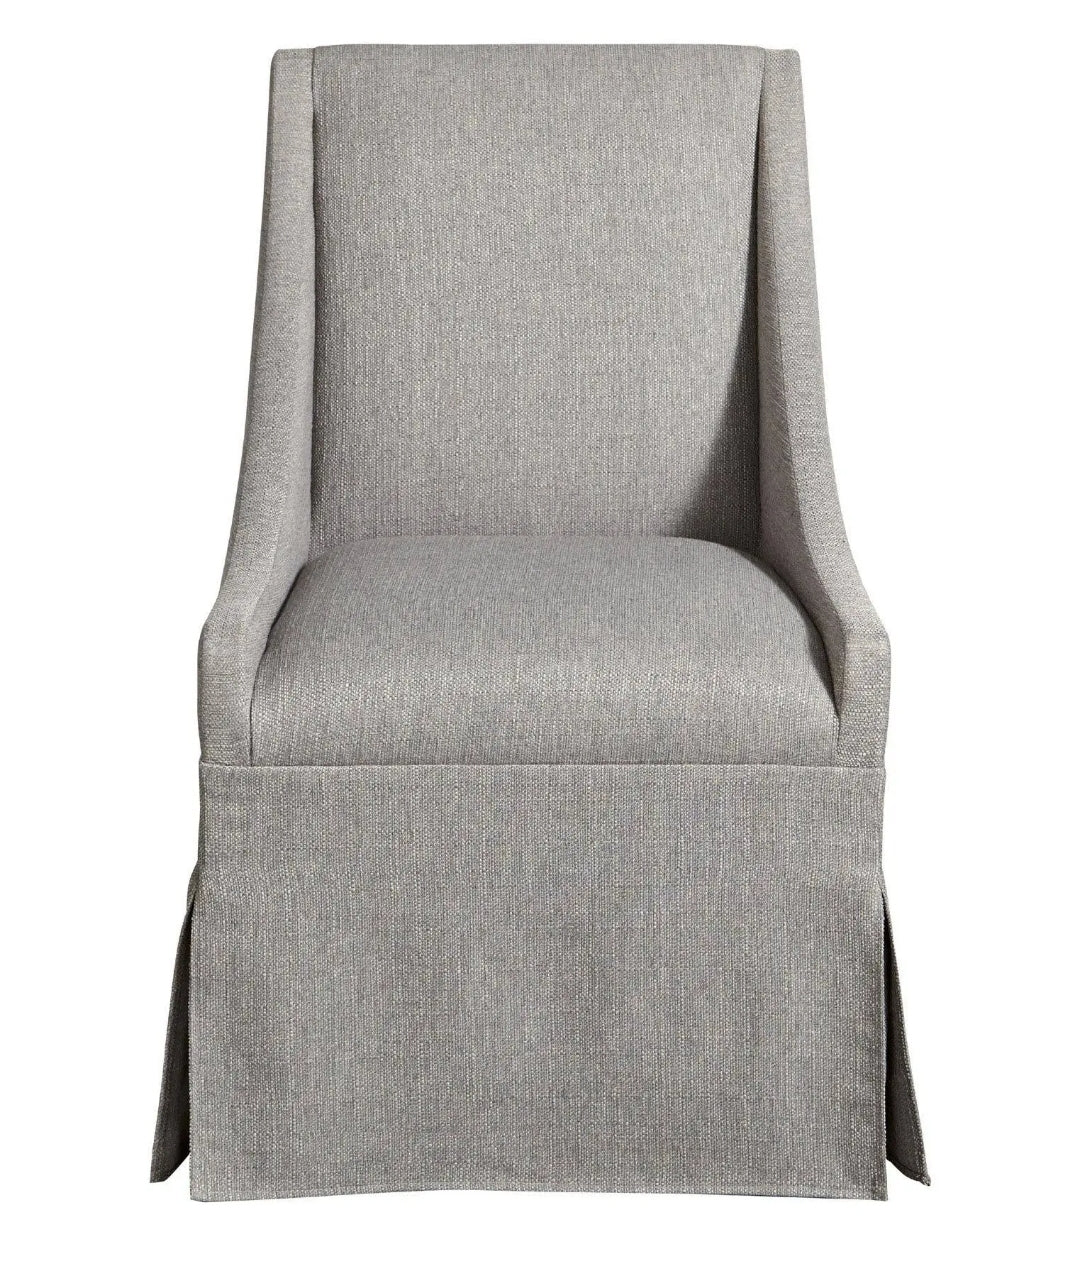 Townsend Arm Chair